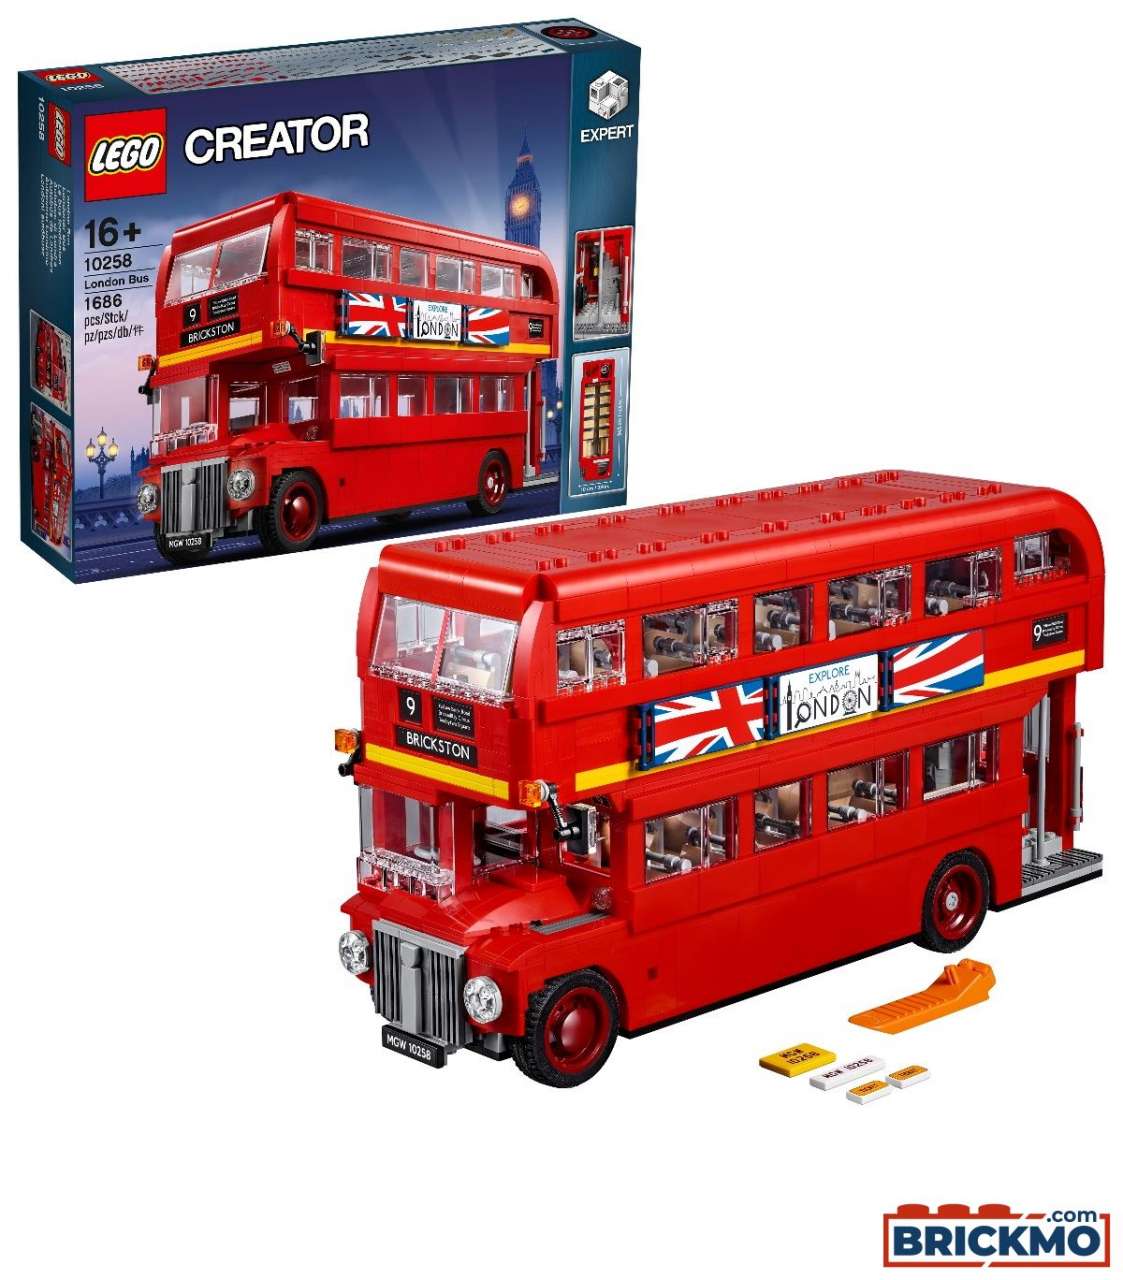 LEGO Creator 10258 Le bus londonien 10258